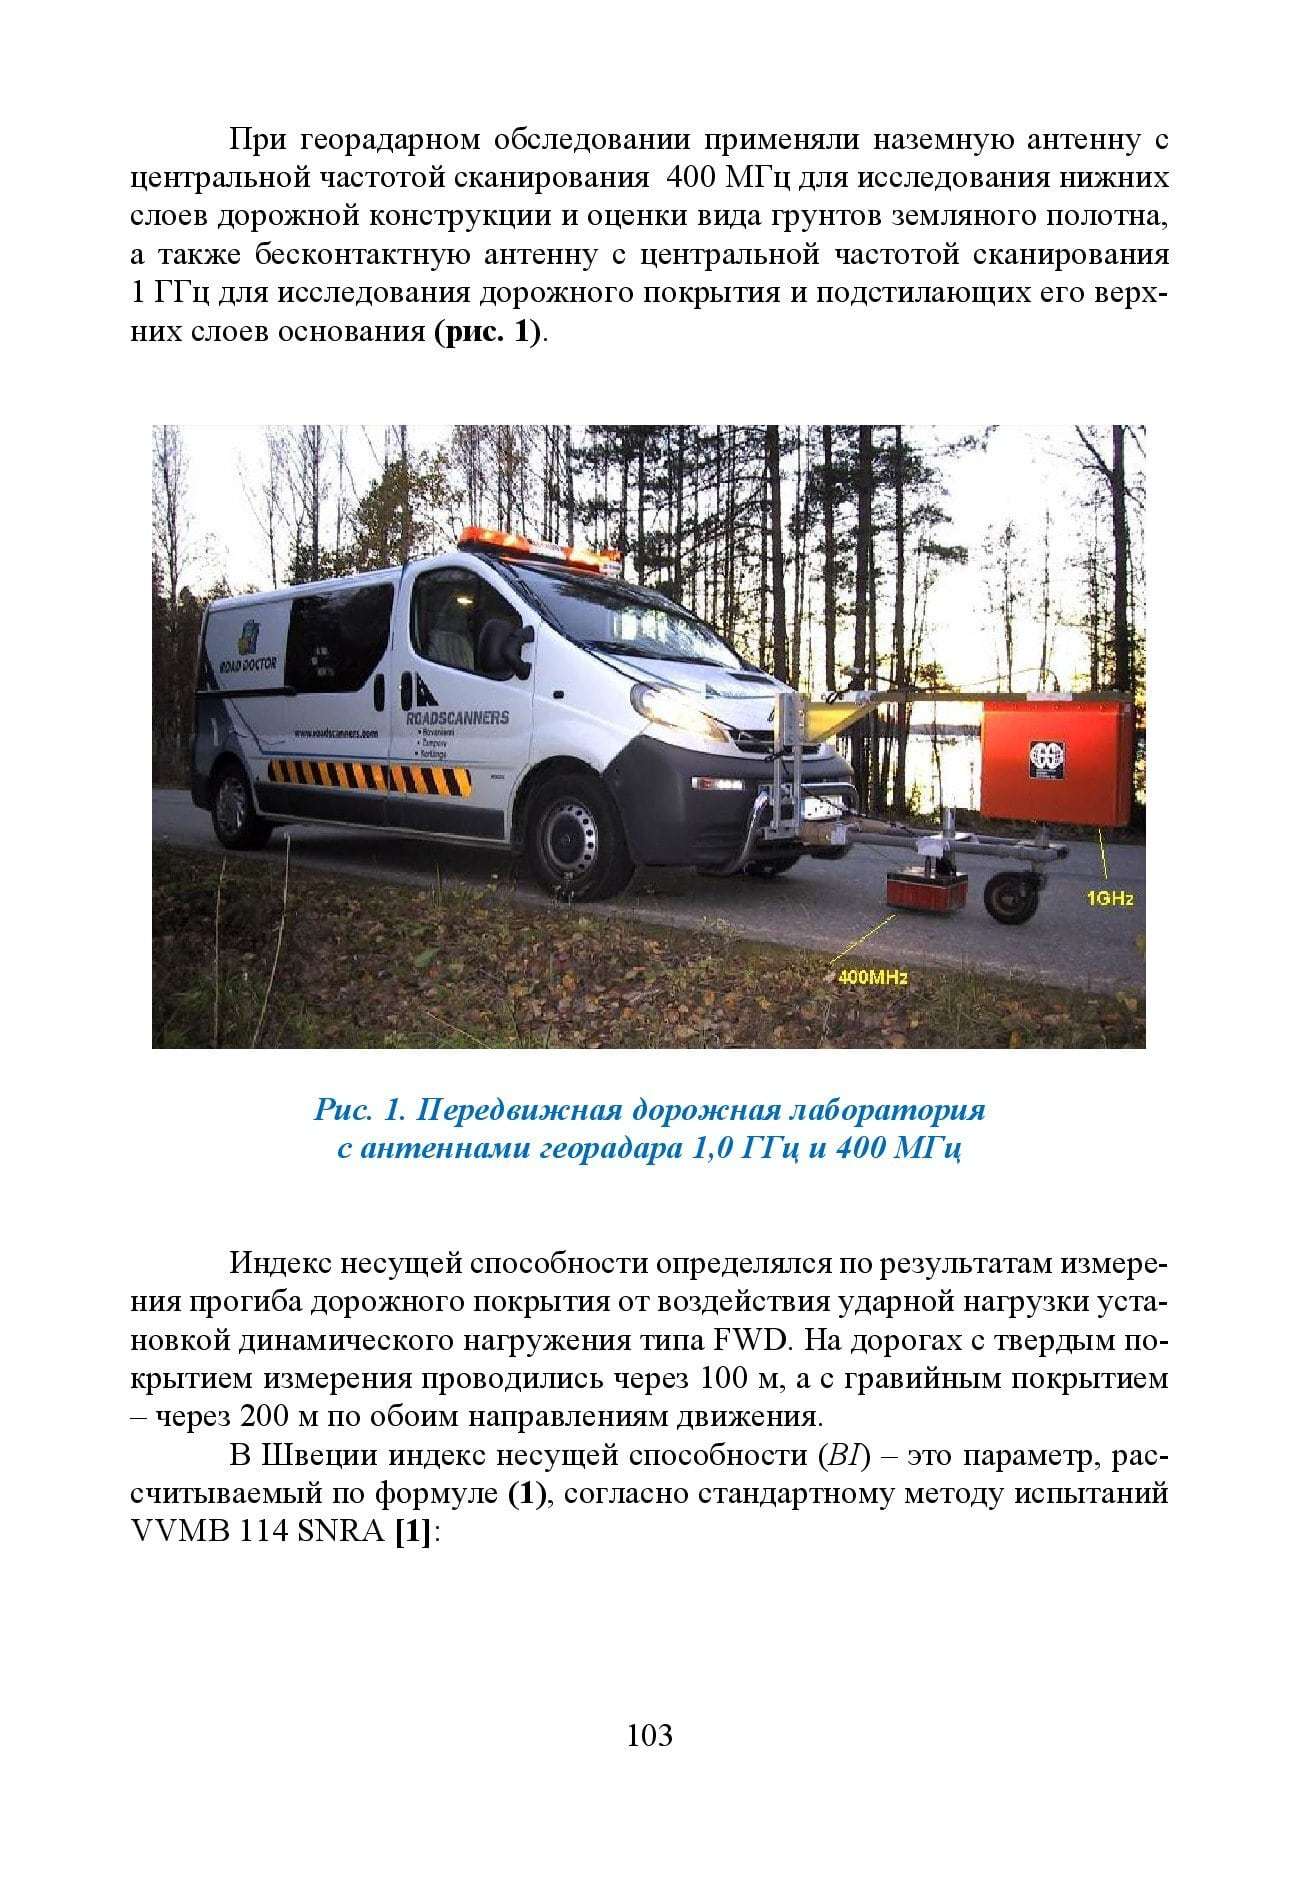 GPR & FWD - выпуск 46 журнал Дороги и мосты_с.103